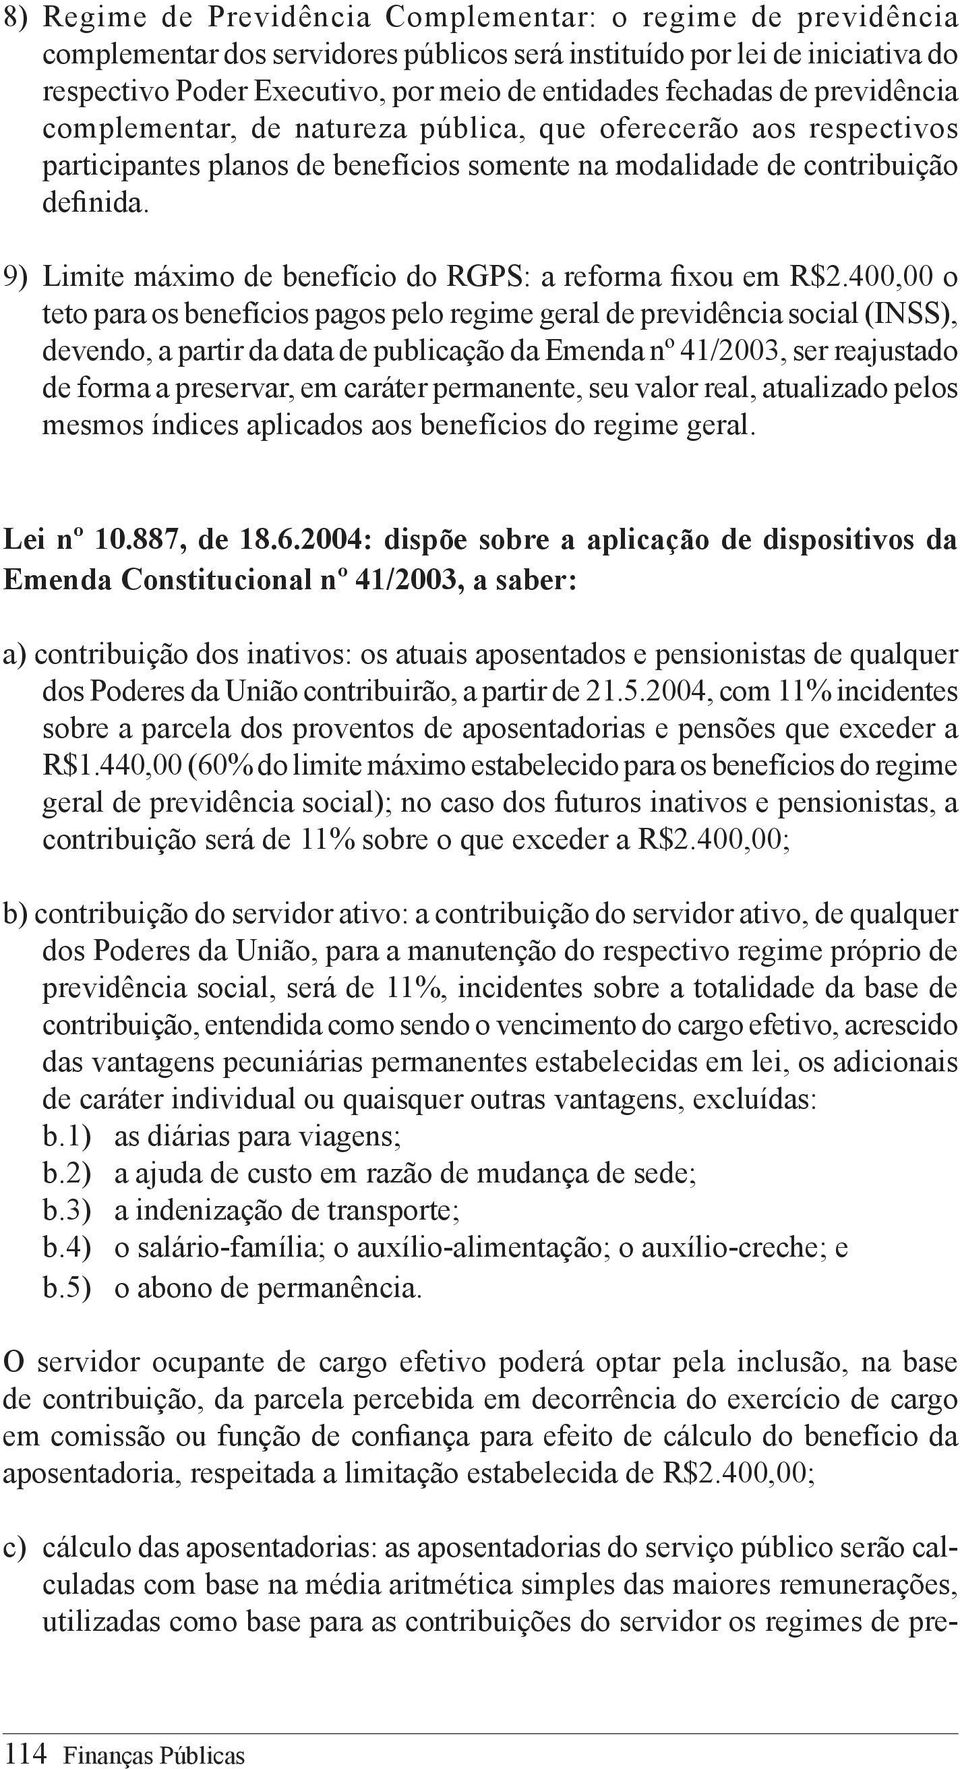 9) Limite máximo de benefício do RGPS: a reforma fixou em R$2.